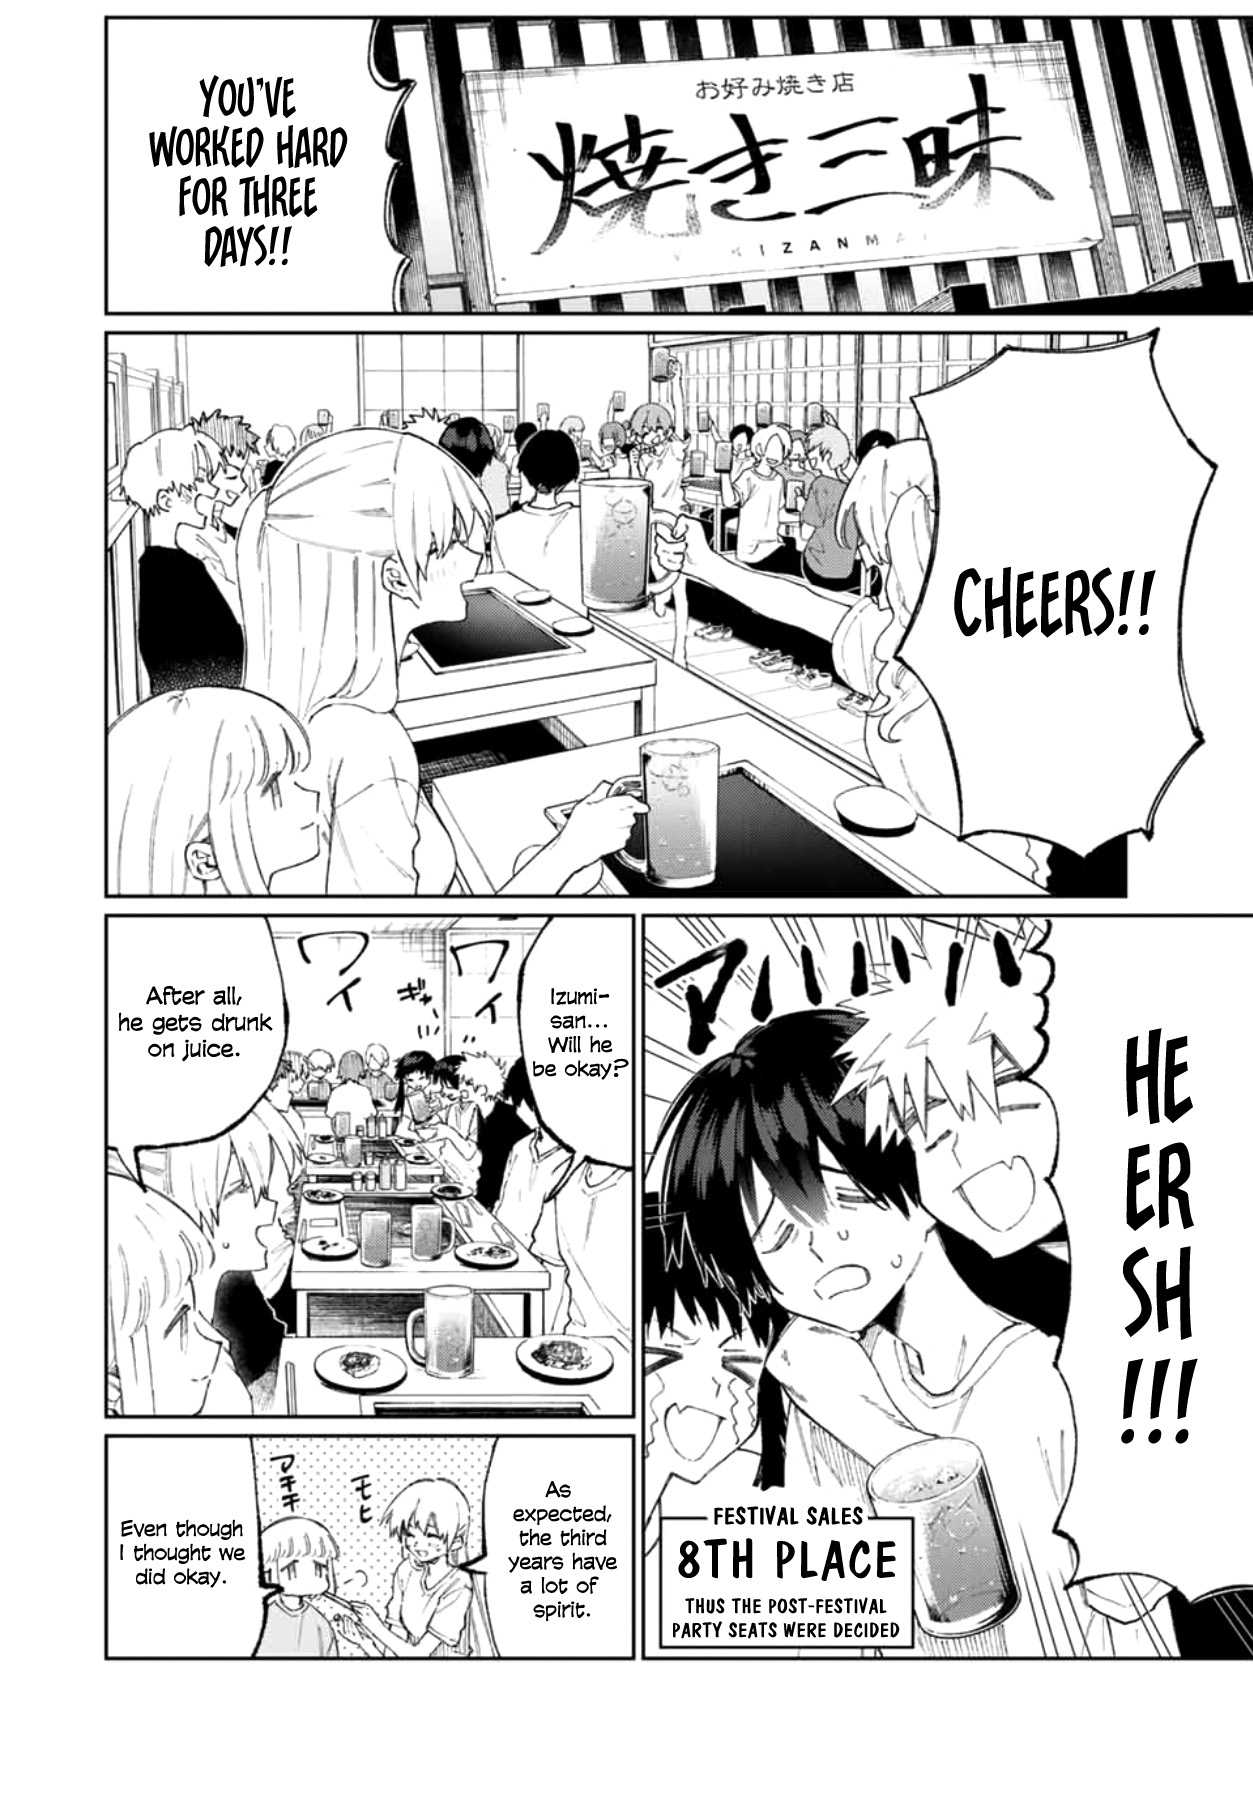 Shikimori's Not Just A Cutie - Page 3